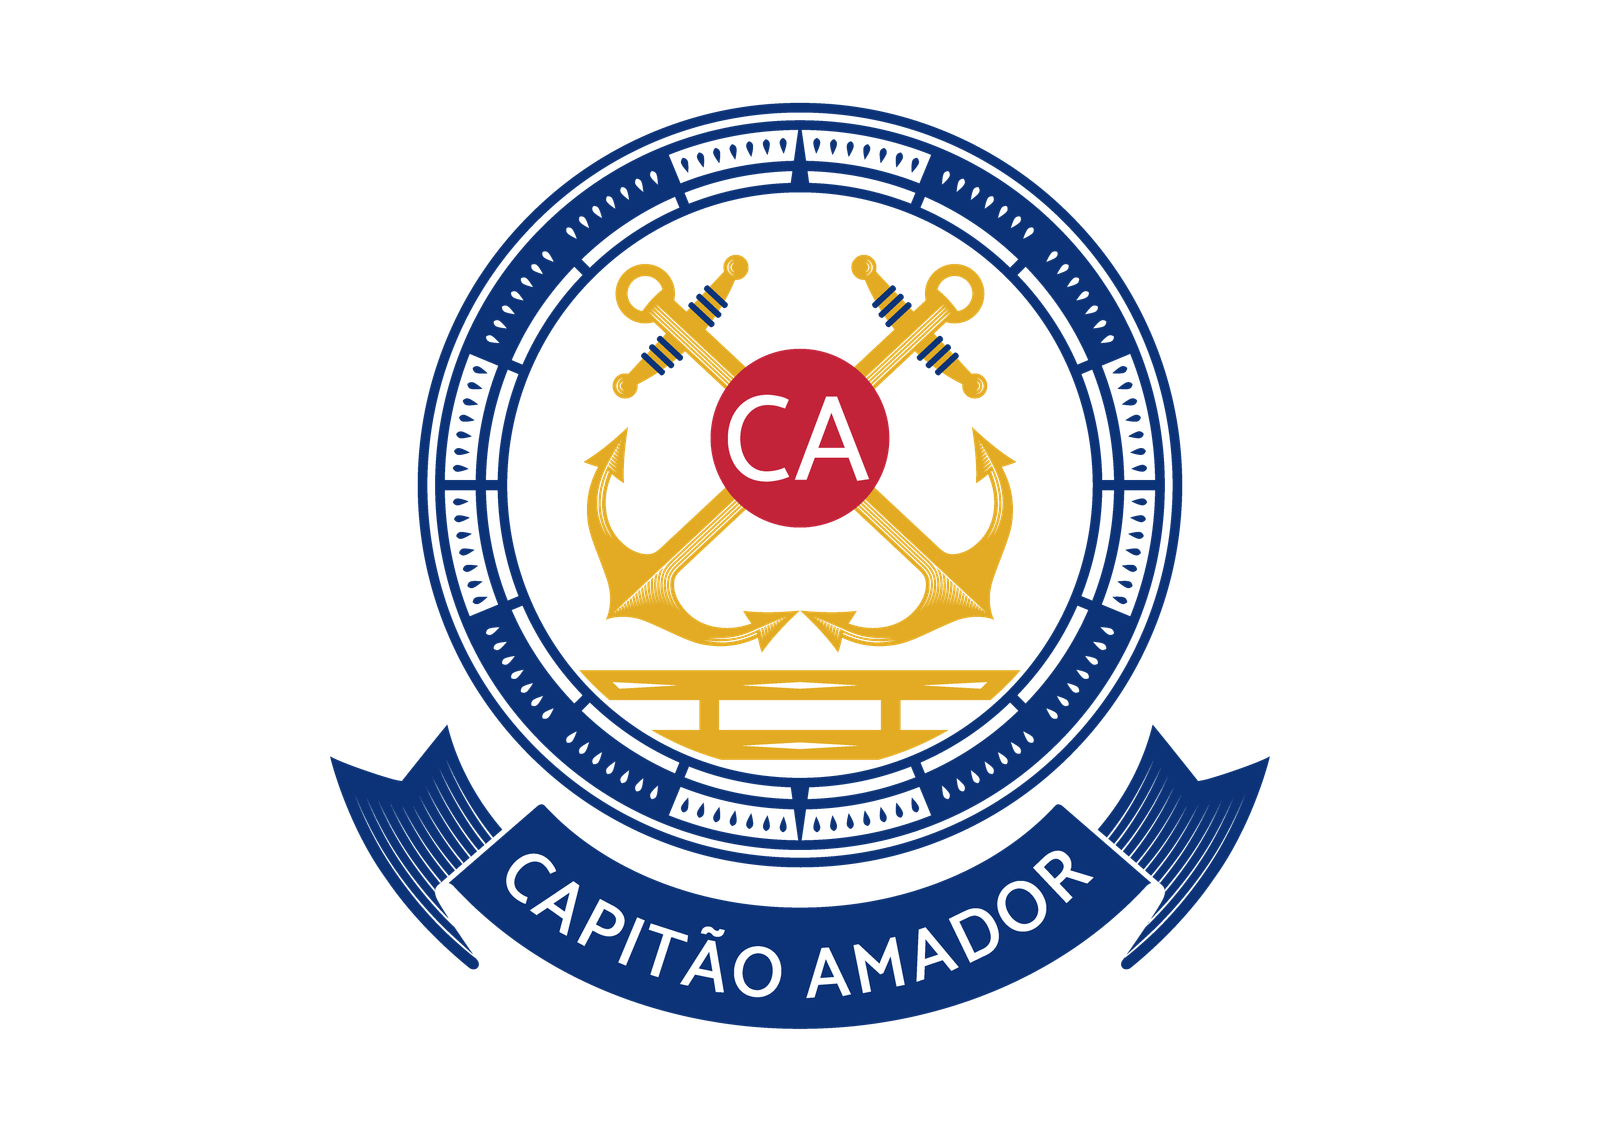 Capitão Amador